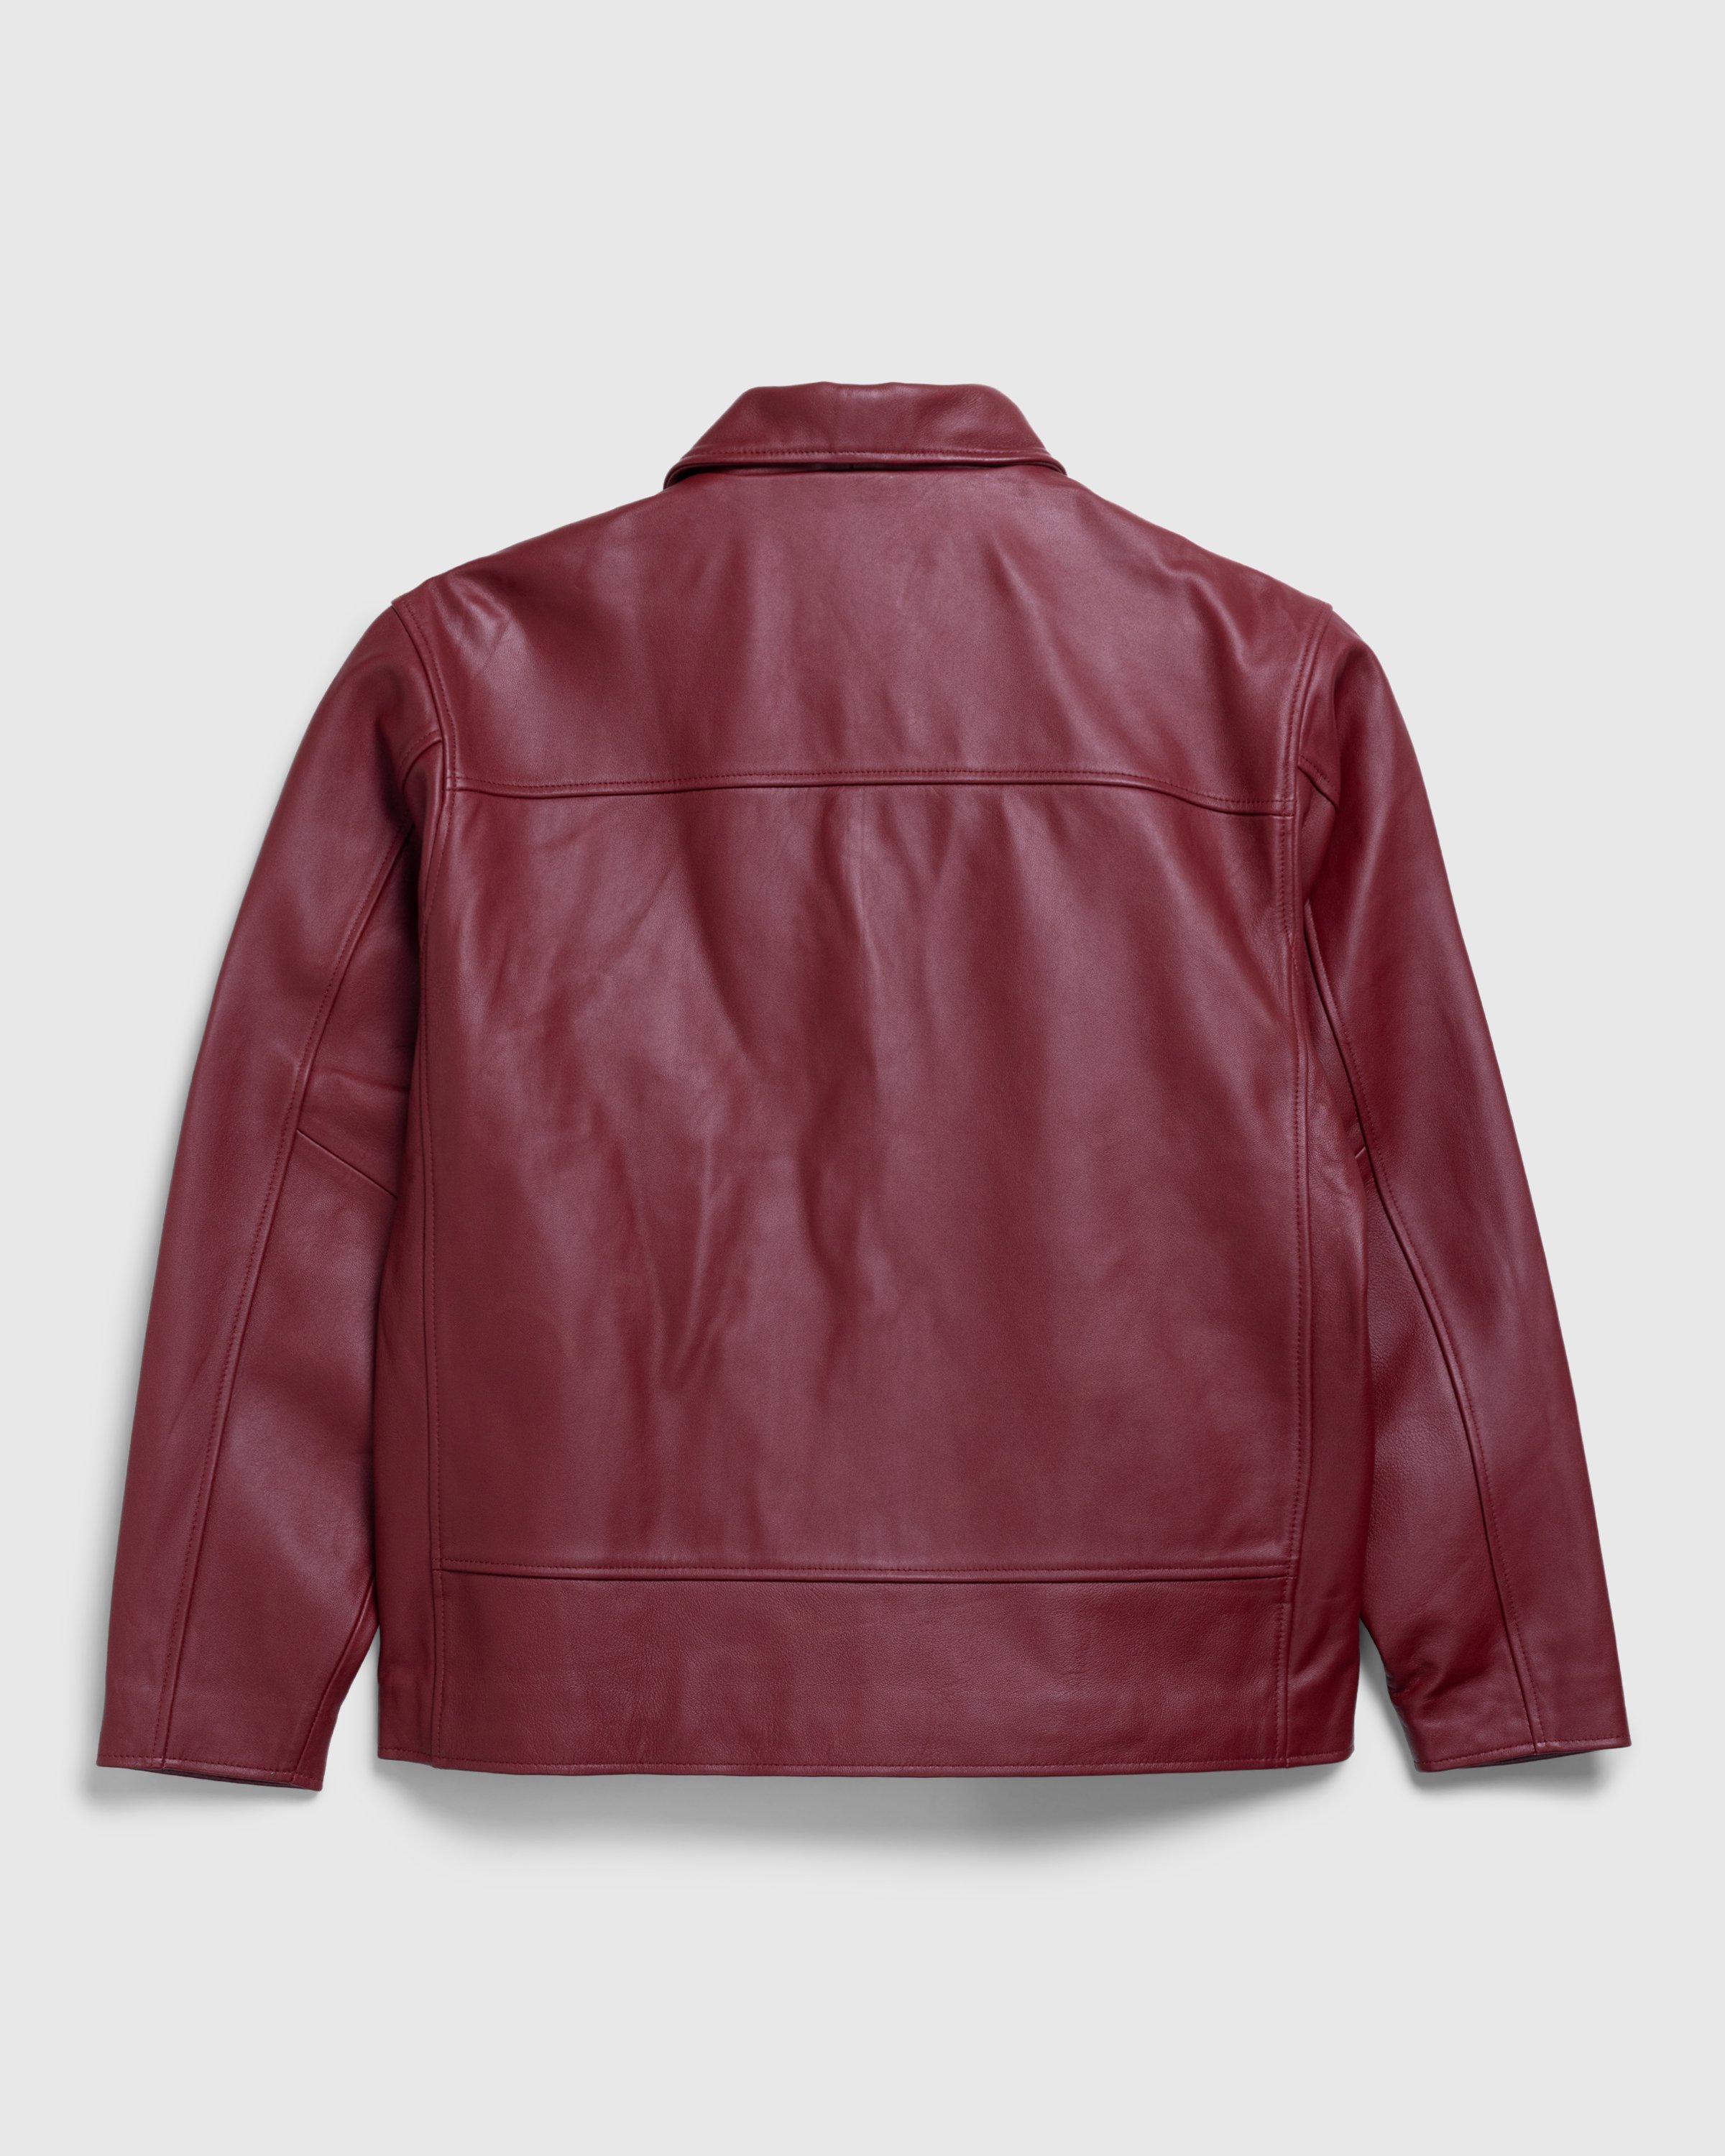 Highsnobiety HS05 - Leather Jacket Burgundy - Clothing - Burgundy - Image 2